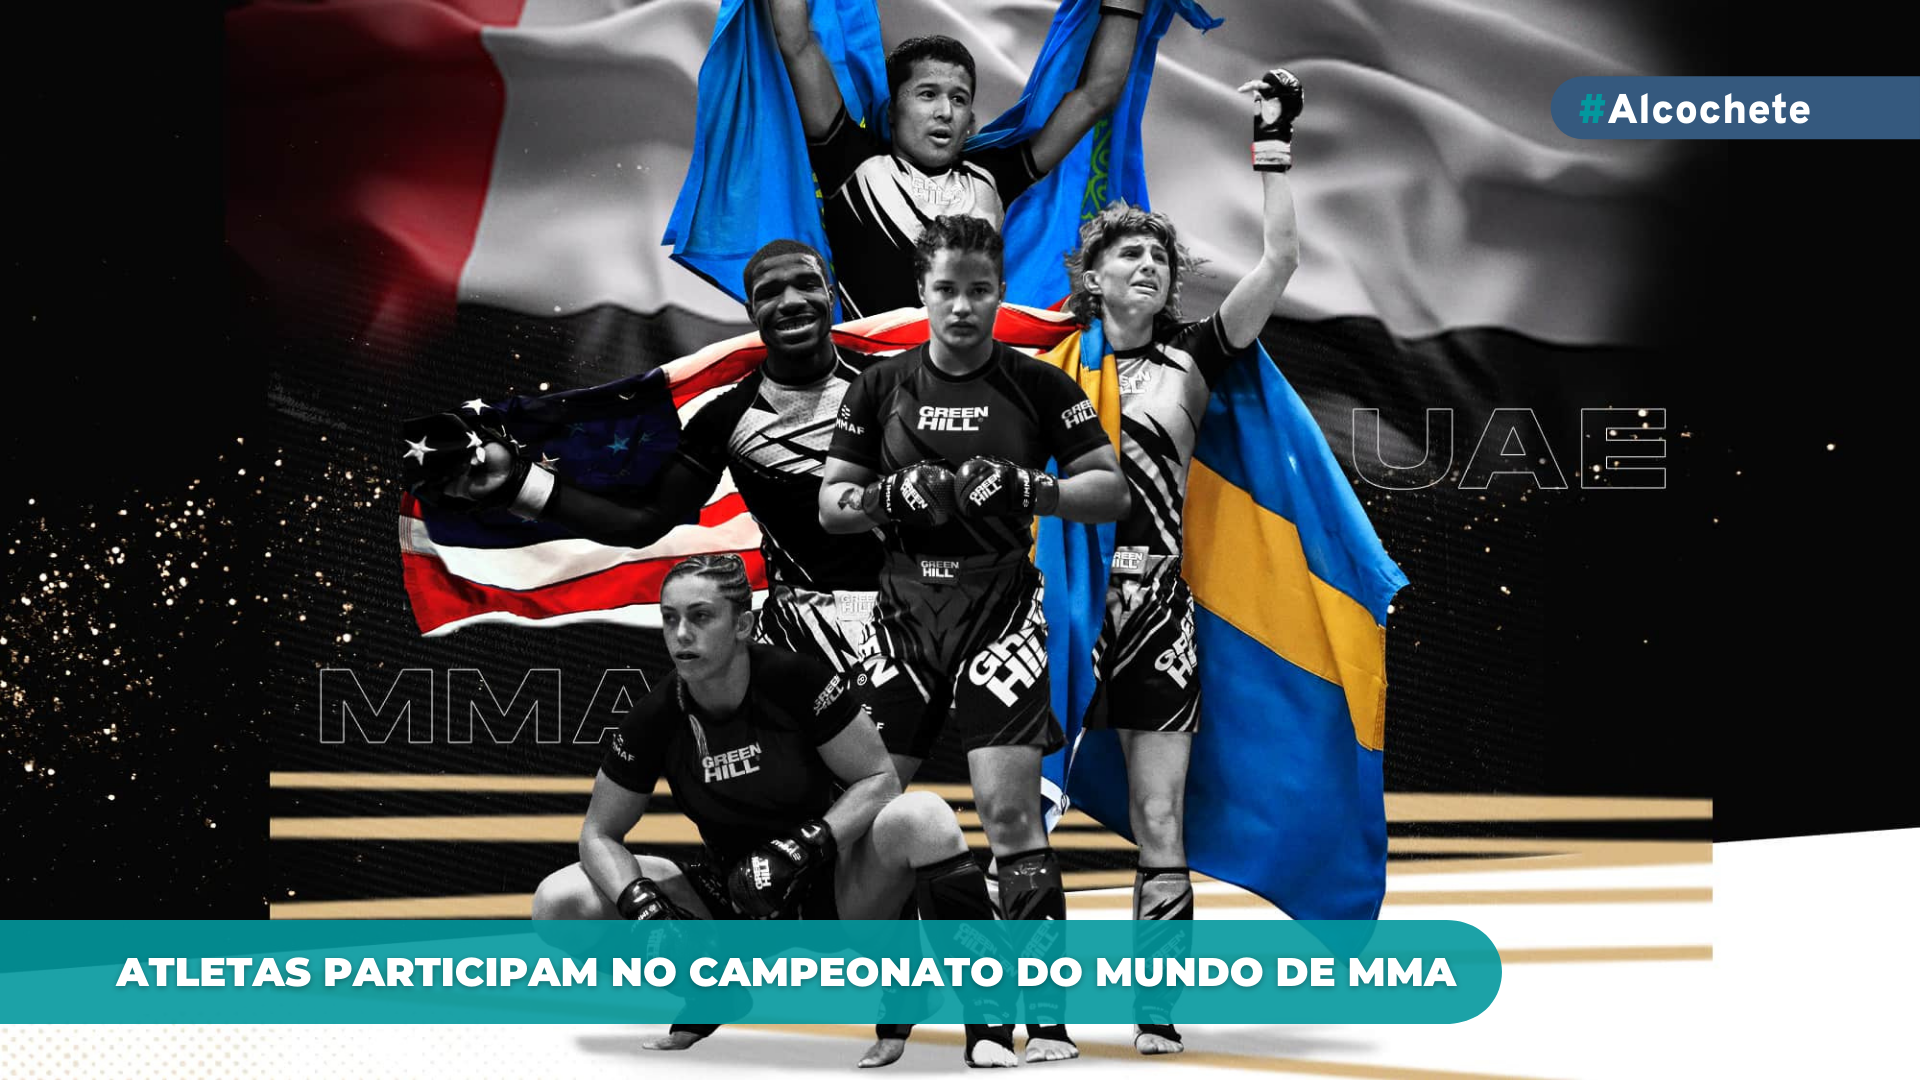 Atletas participam em campeonato do mundo de MMA